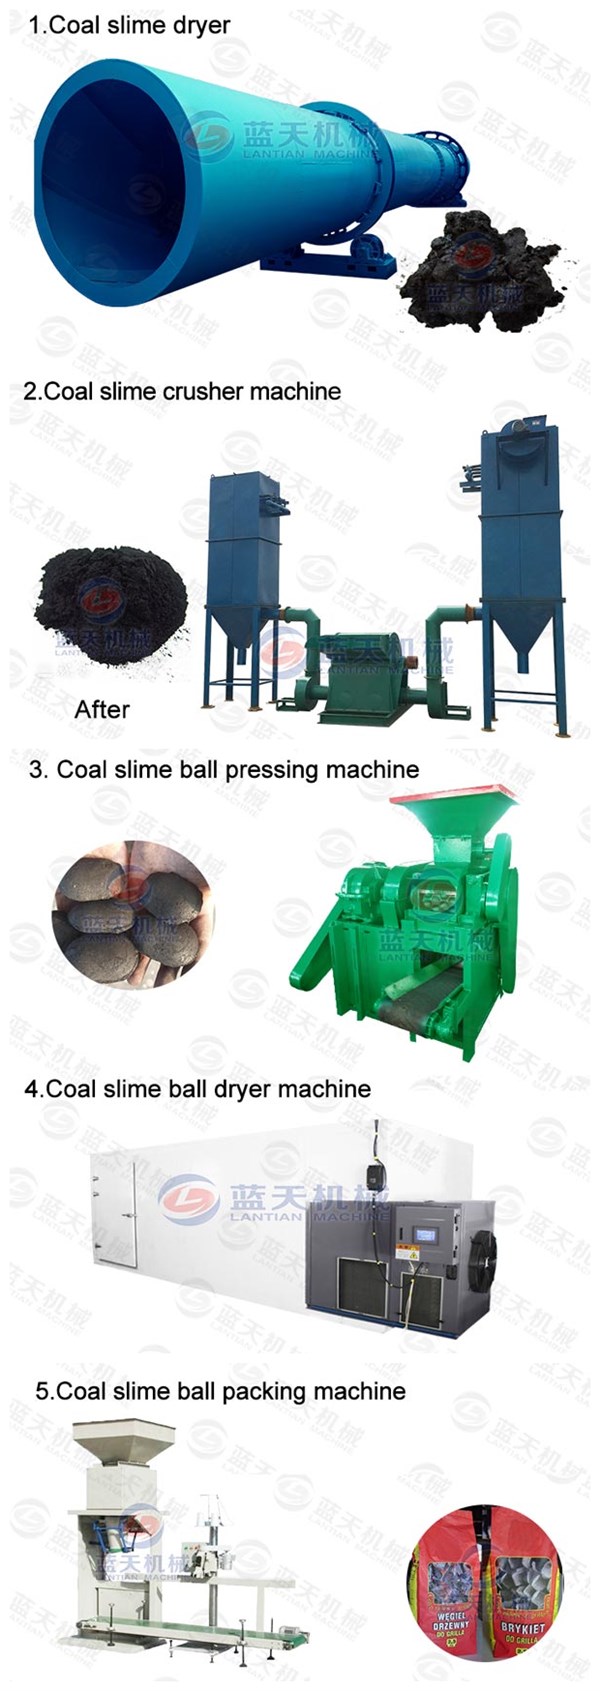 Coal Slime Ball Pressing Machine